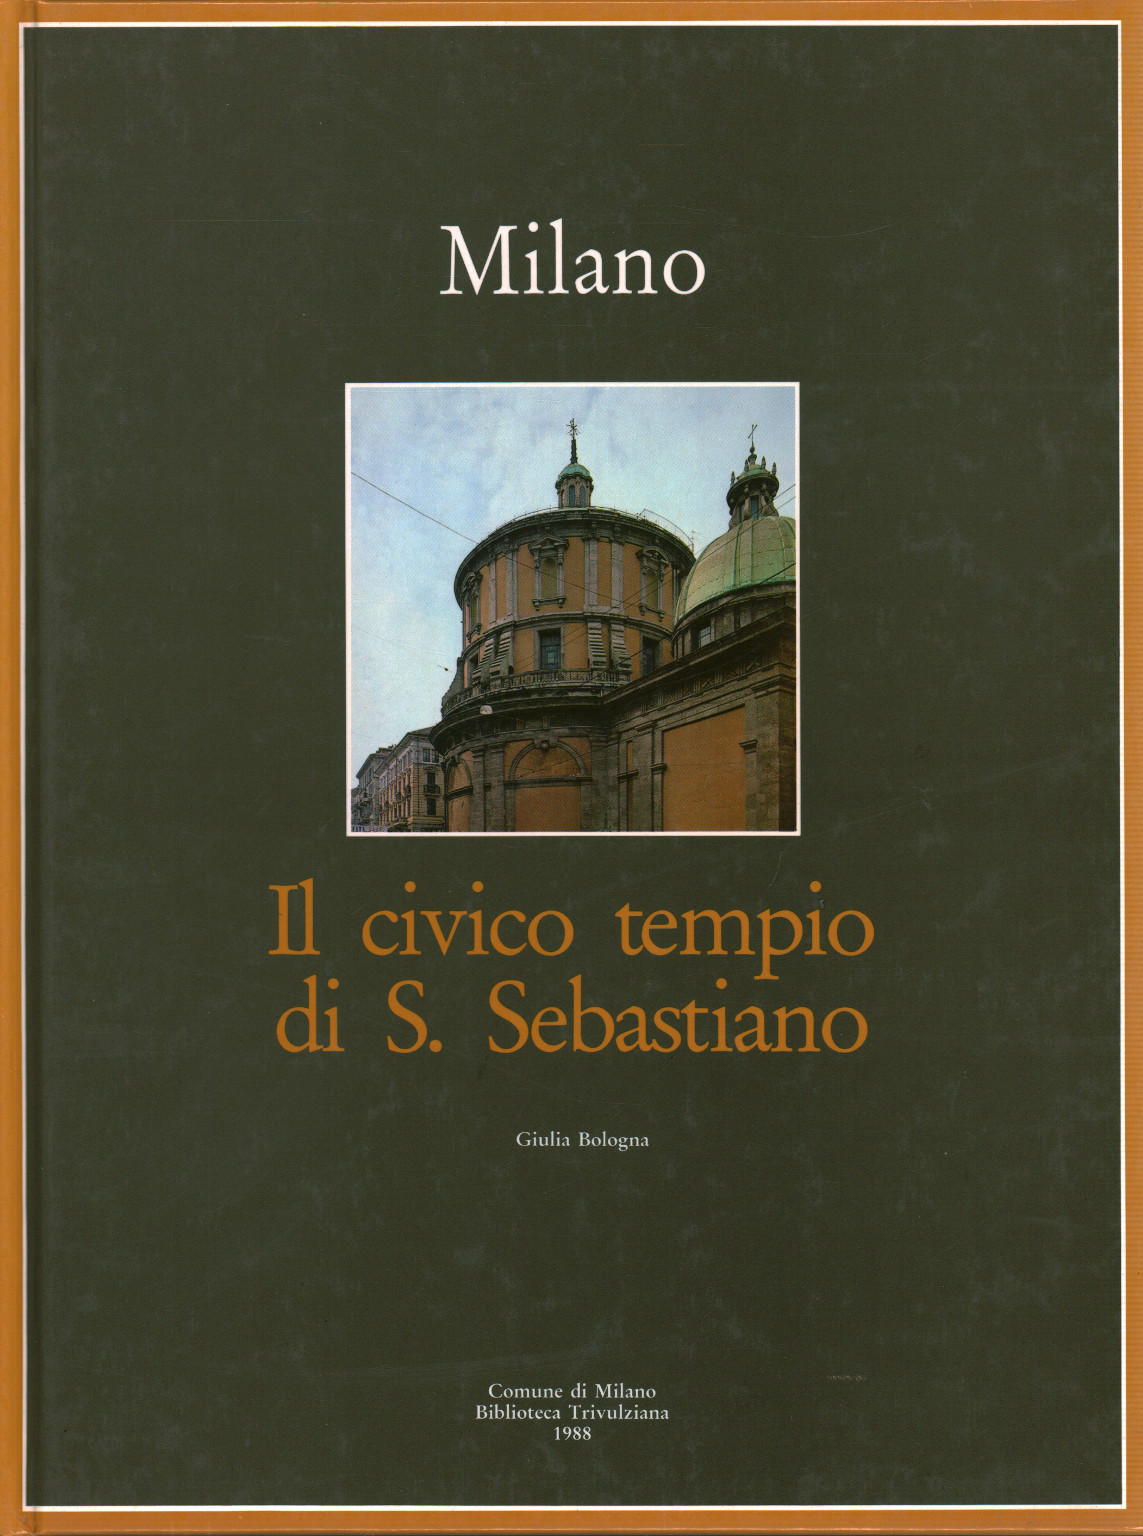 Milán. El templo cívico de S. Sebastiano, s.a.